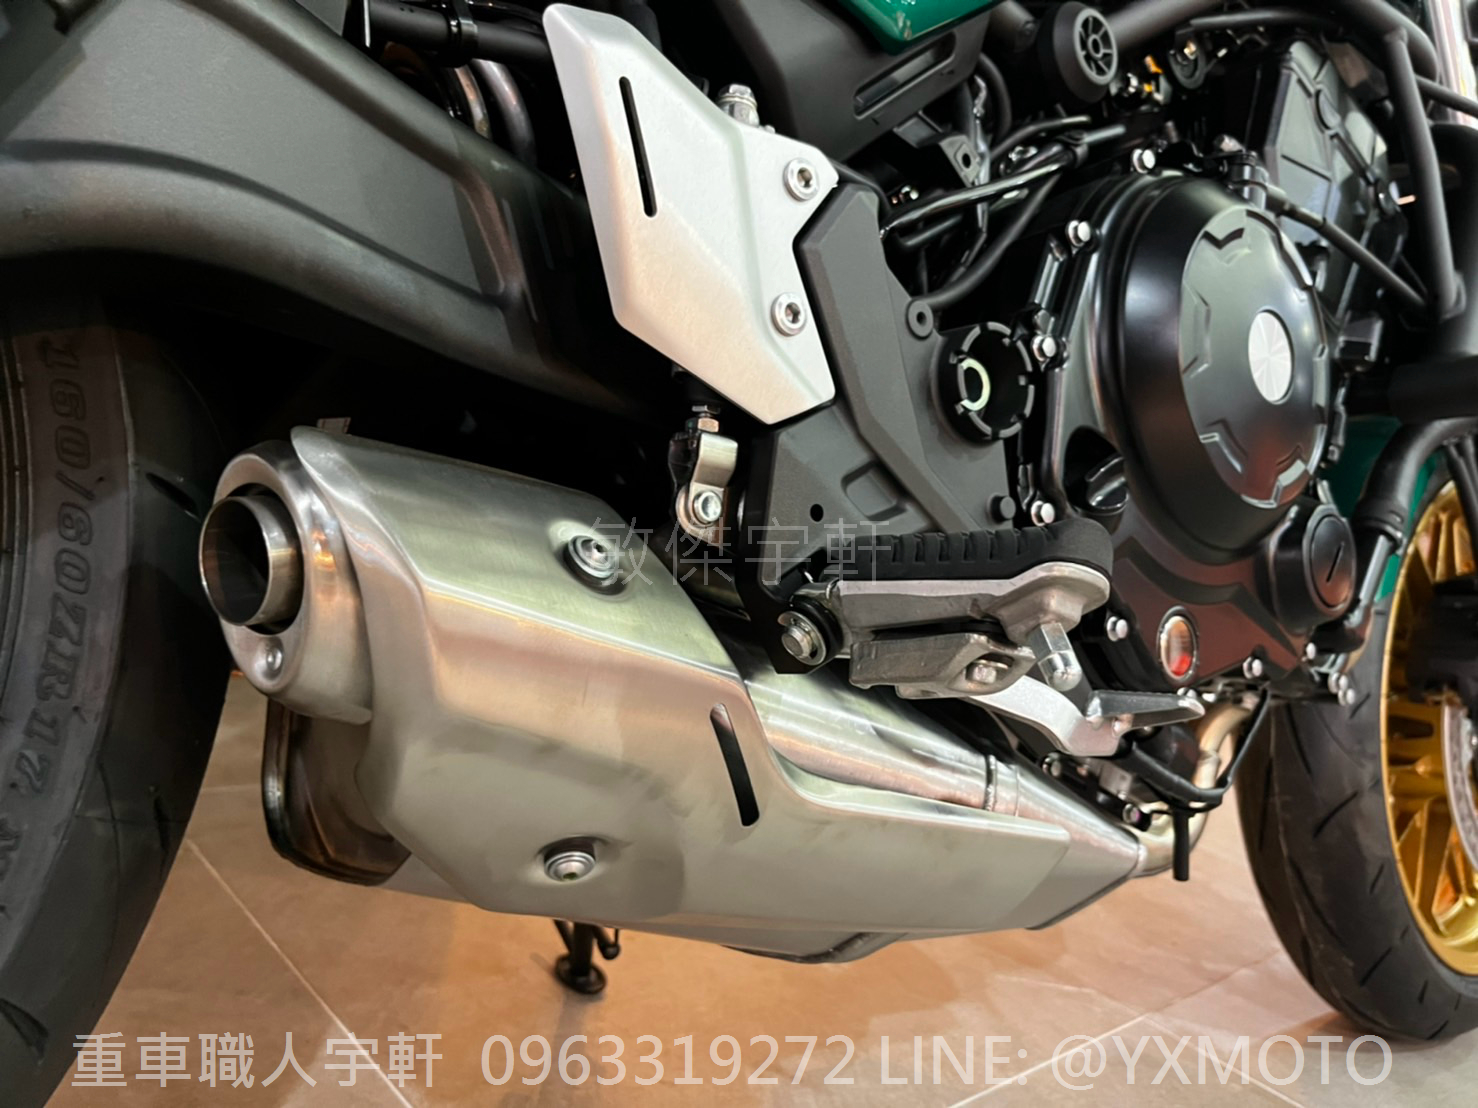 KAWASAKI Z650RS新車出售中 【敏傑宇軒】2023 Kawasaki Z650RS 綠色 總代理公司車 | 重車銷售職人-宇軒 (敏傑)